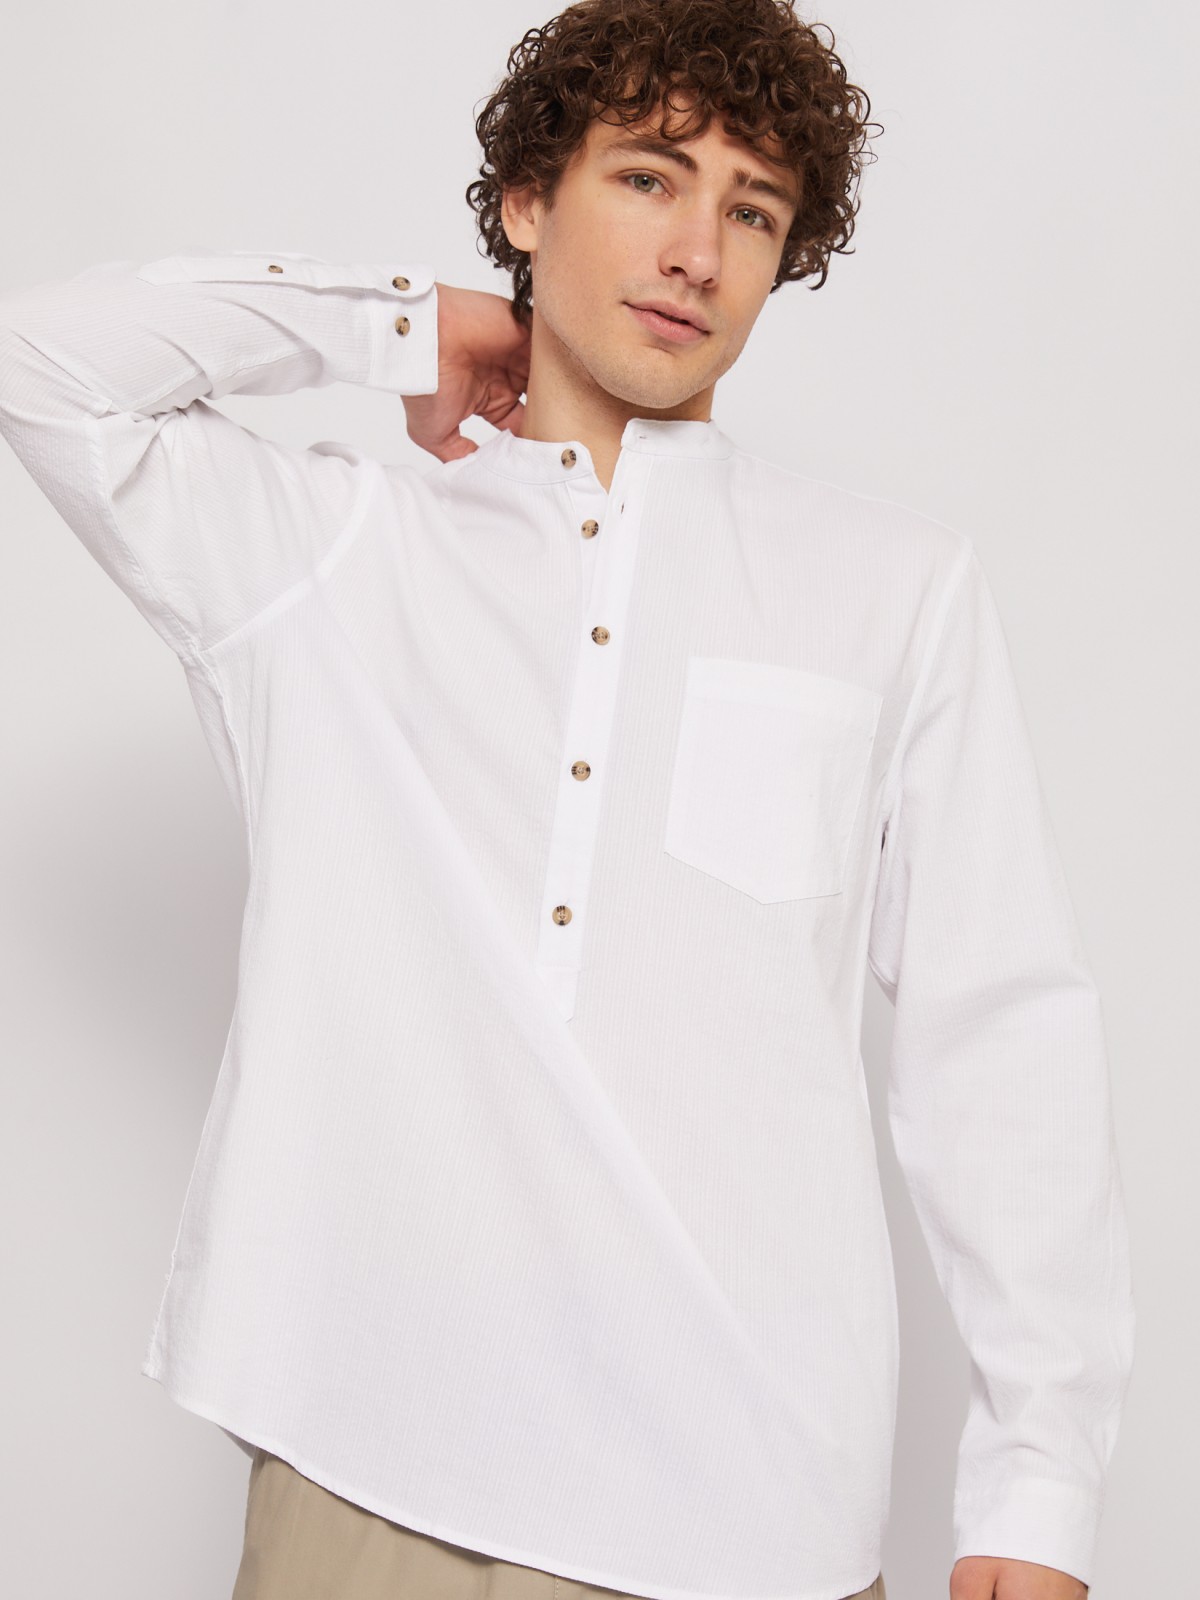 Хлопковая рубашка прямого силуэта zolla 014222162023, цвет белый, размер S - фото 3